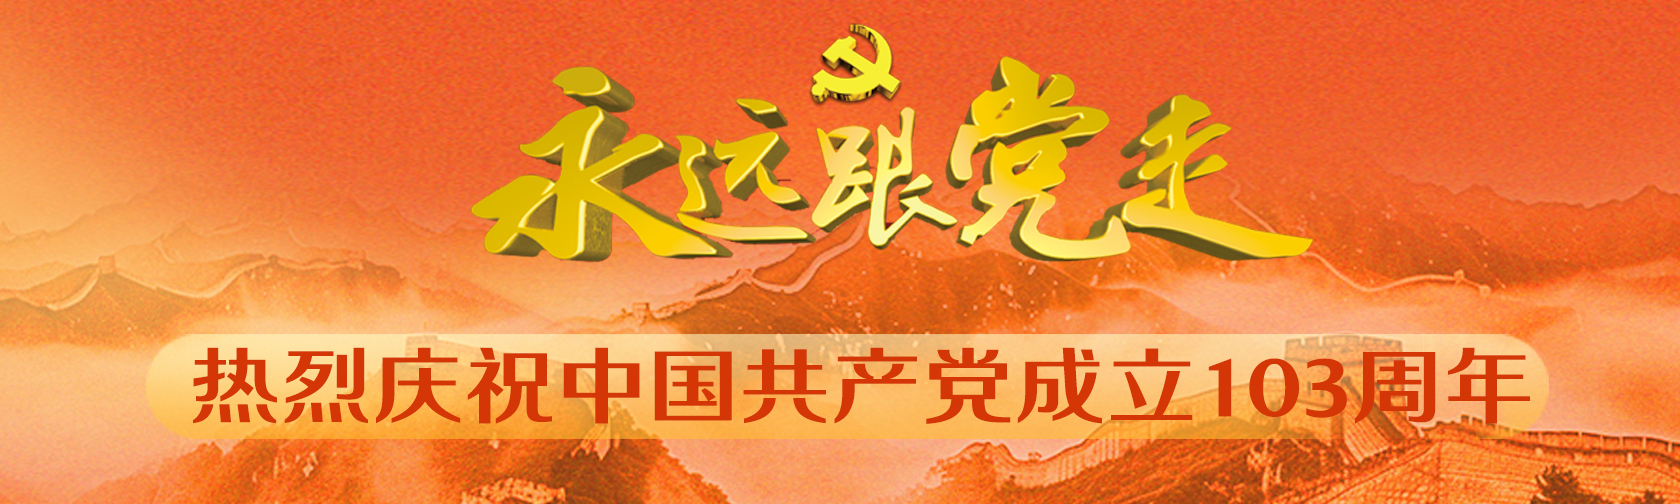 永远跟党走热烈庆祝中国共产党成立103周年.jpg